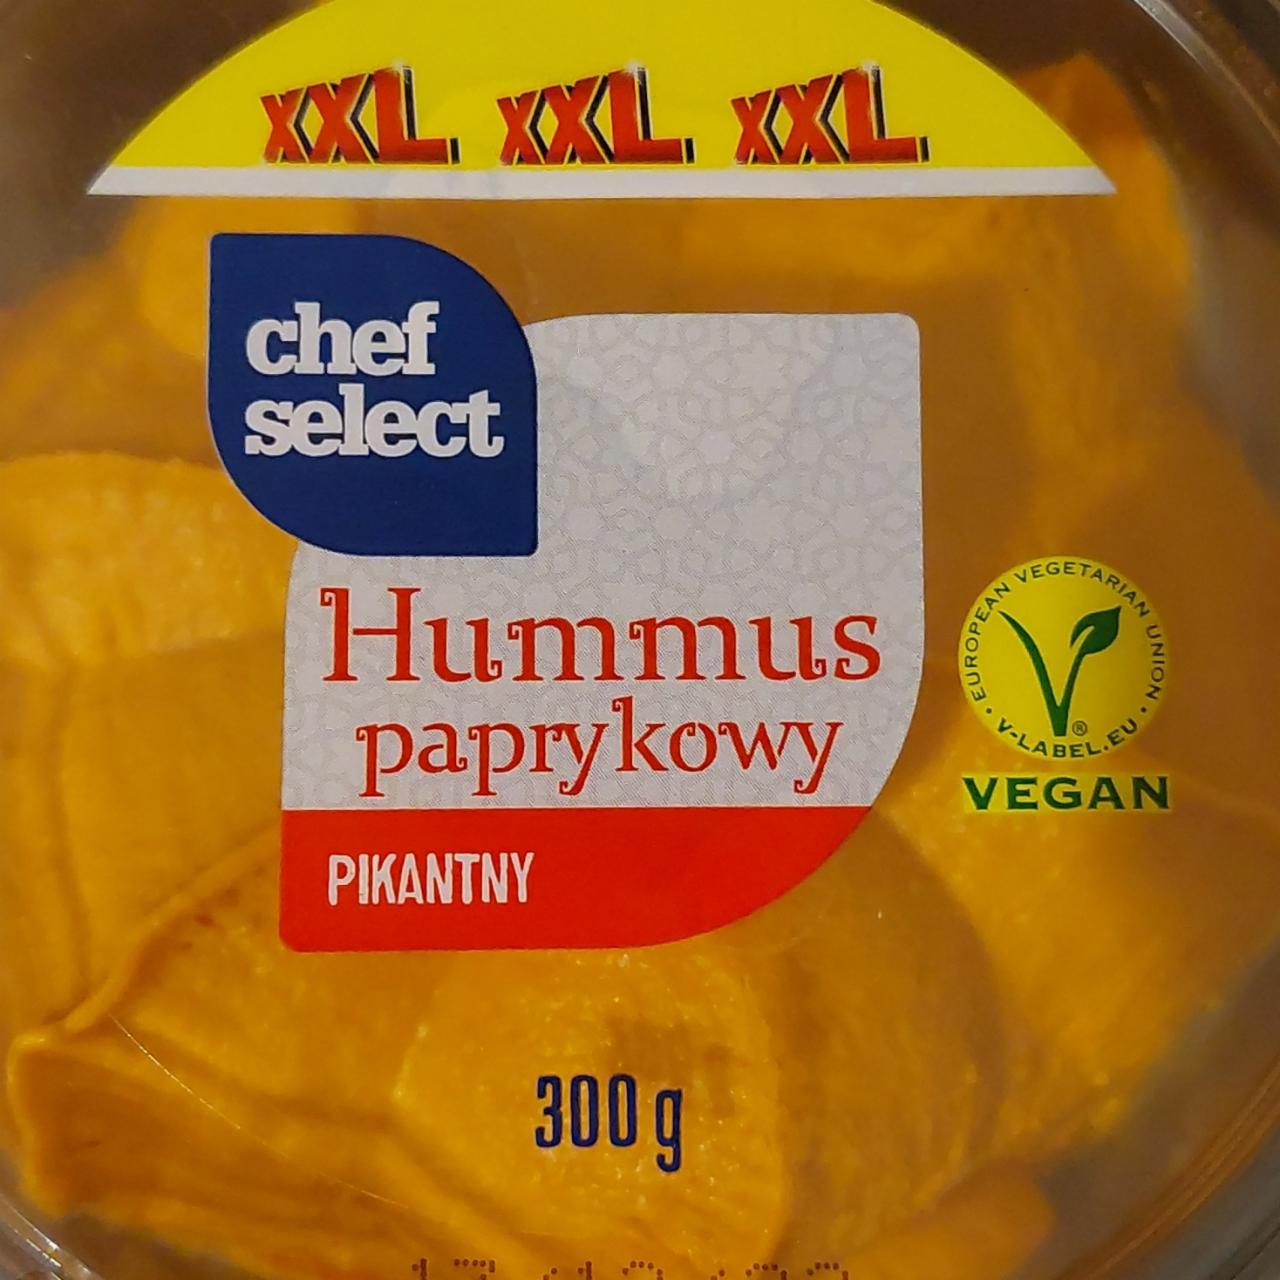 Zdjęcia - hummus paprykowy pikantny Chef Select